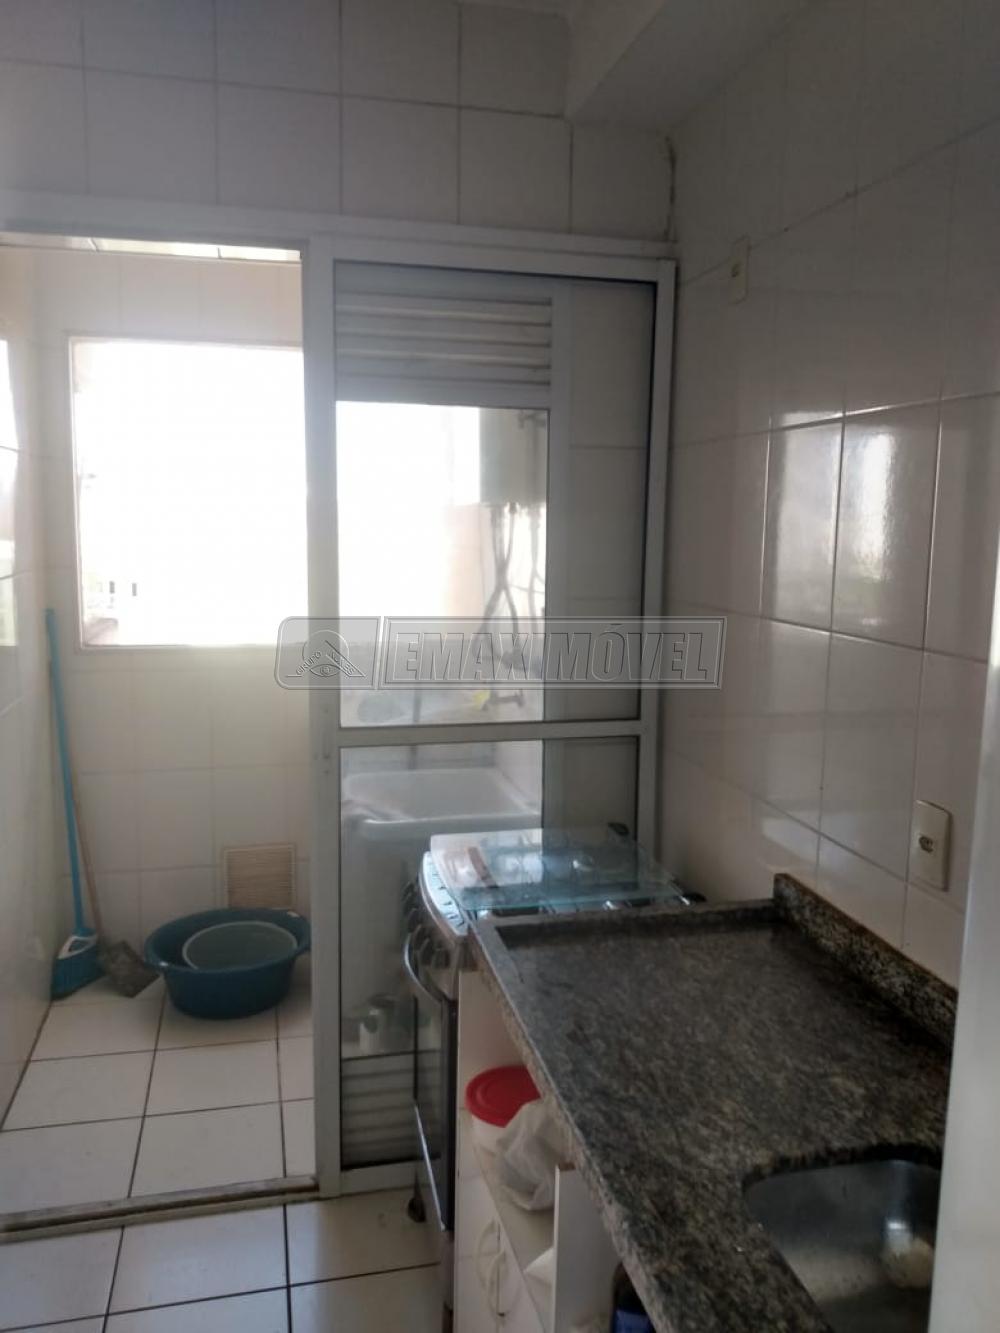 Comprar Apartamento / Padrão em Sorocaba R$ 280.000,00 - Foto 10